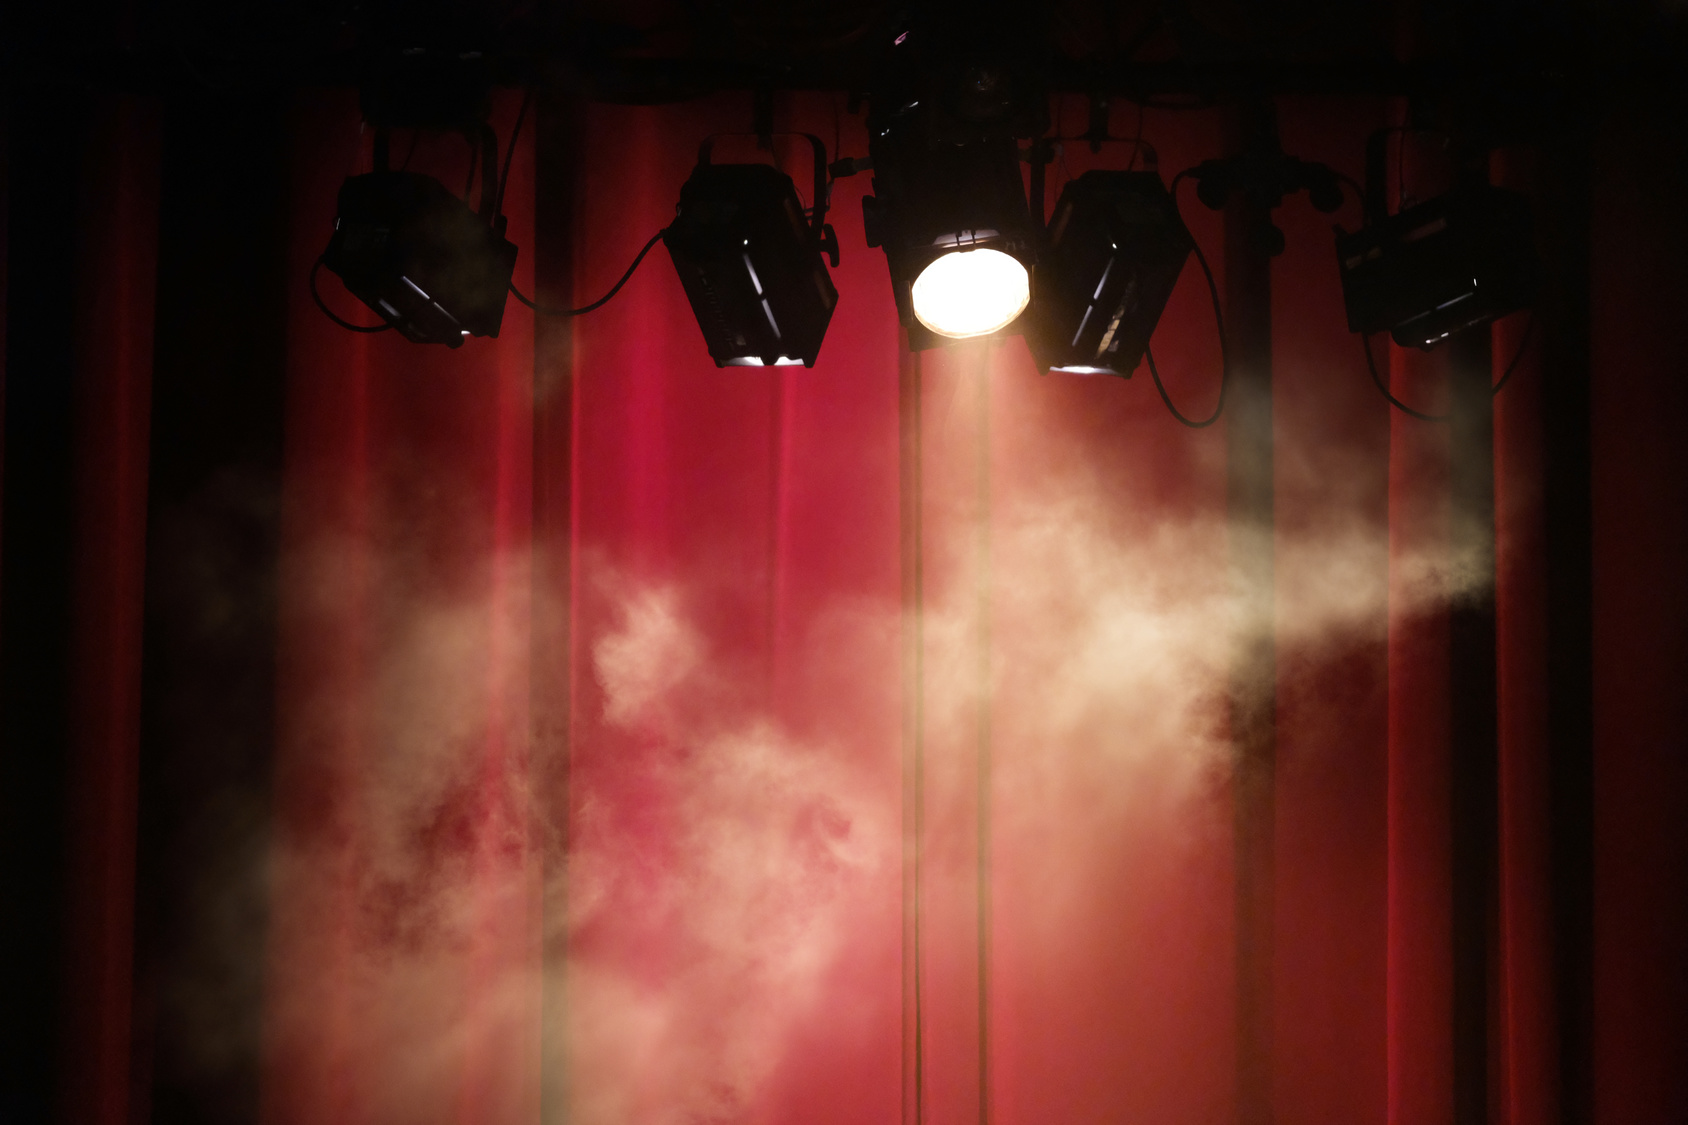 Projecteurs et fumée devant un rideau rouge